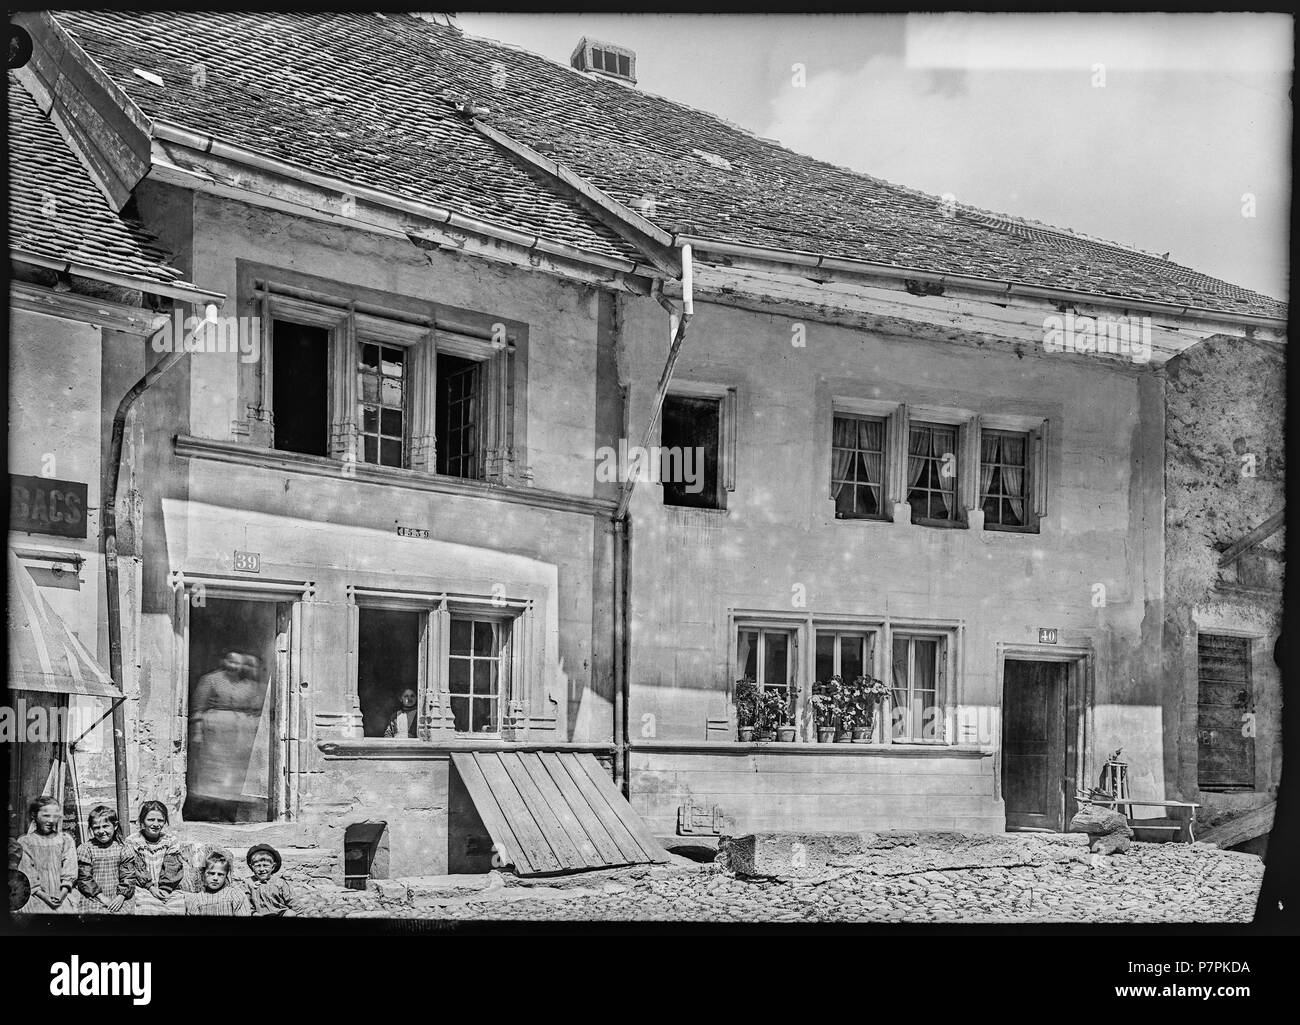 75 CH-NB - Moudon, Maison du Bourg, Façade, vue d'ensemble - Collection Max van Berchem - EAD-7378 Stock Photo